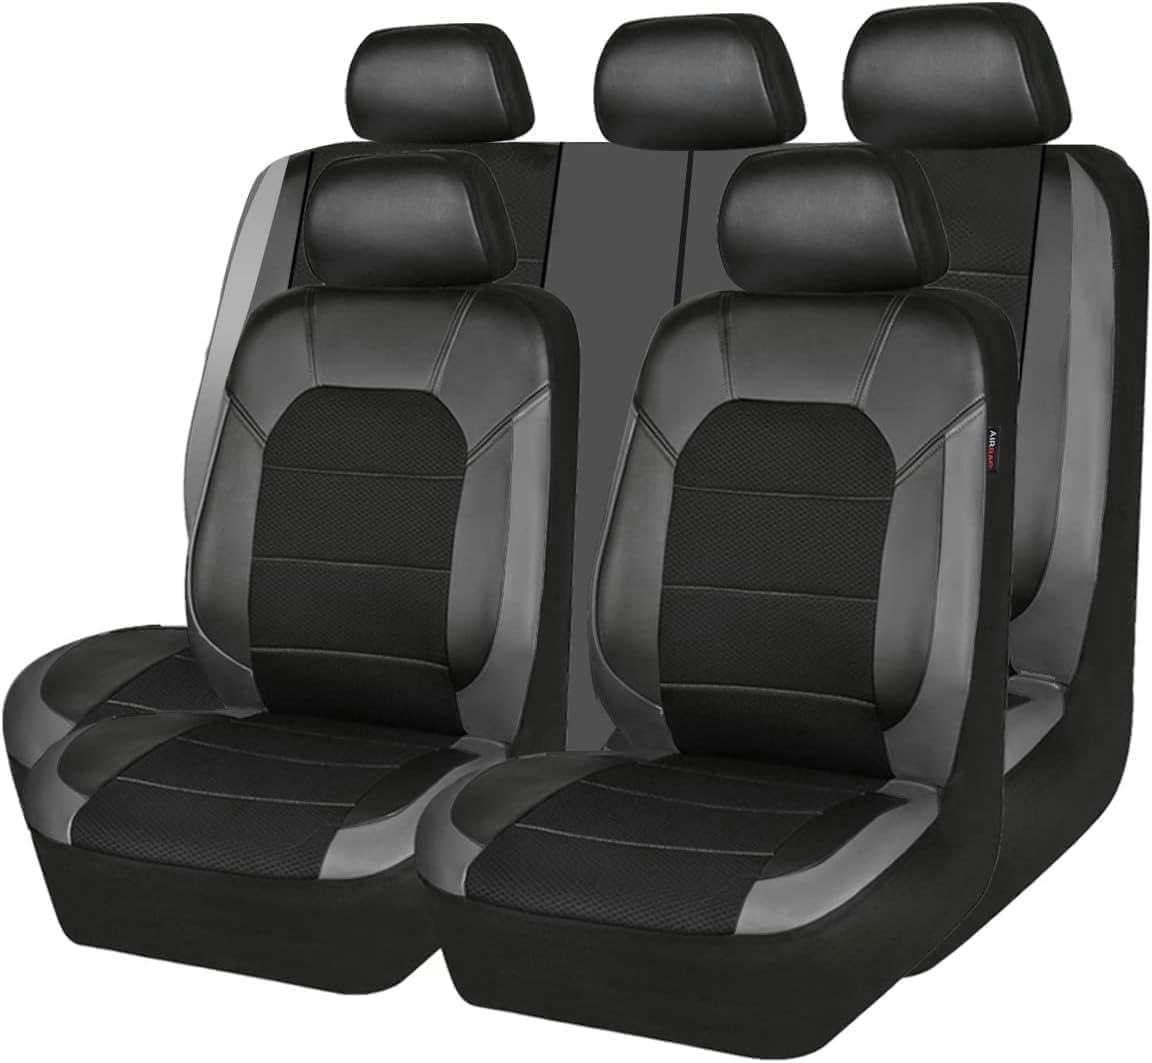 VewZJJ Auto Sitzbezügesets für Suzuki Jimny,Komfortabler Atmungsaktiv Sitzschoner Satz Sitzbezug,rutschfest Wasserdichter Vorne RüCkbank Autositz SitzbezüGe,Black-Grey von VewZJJ